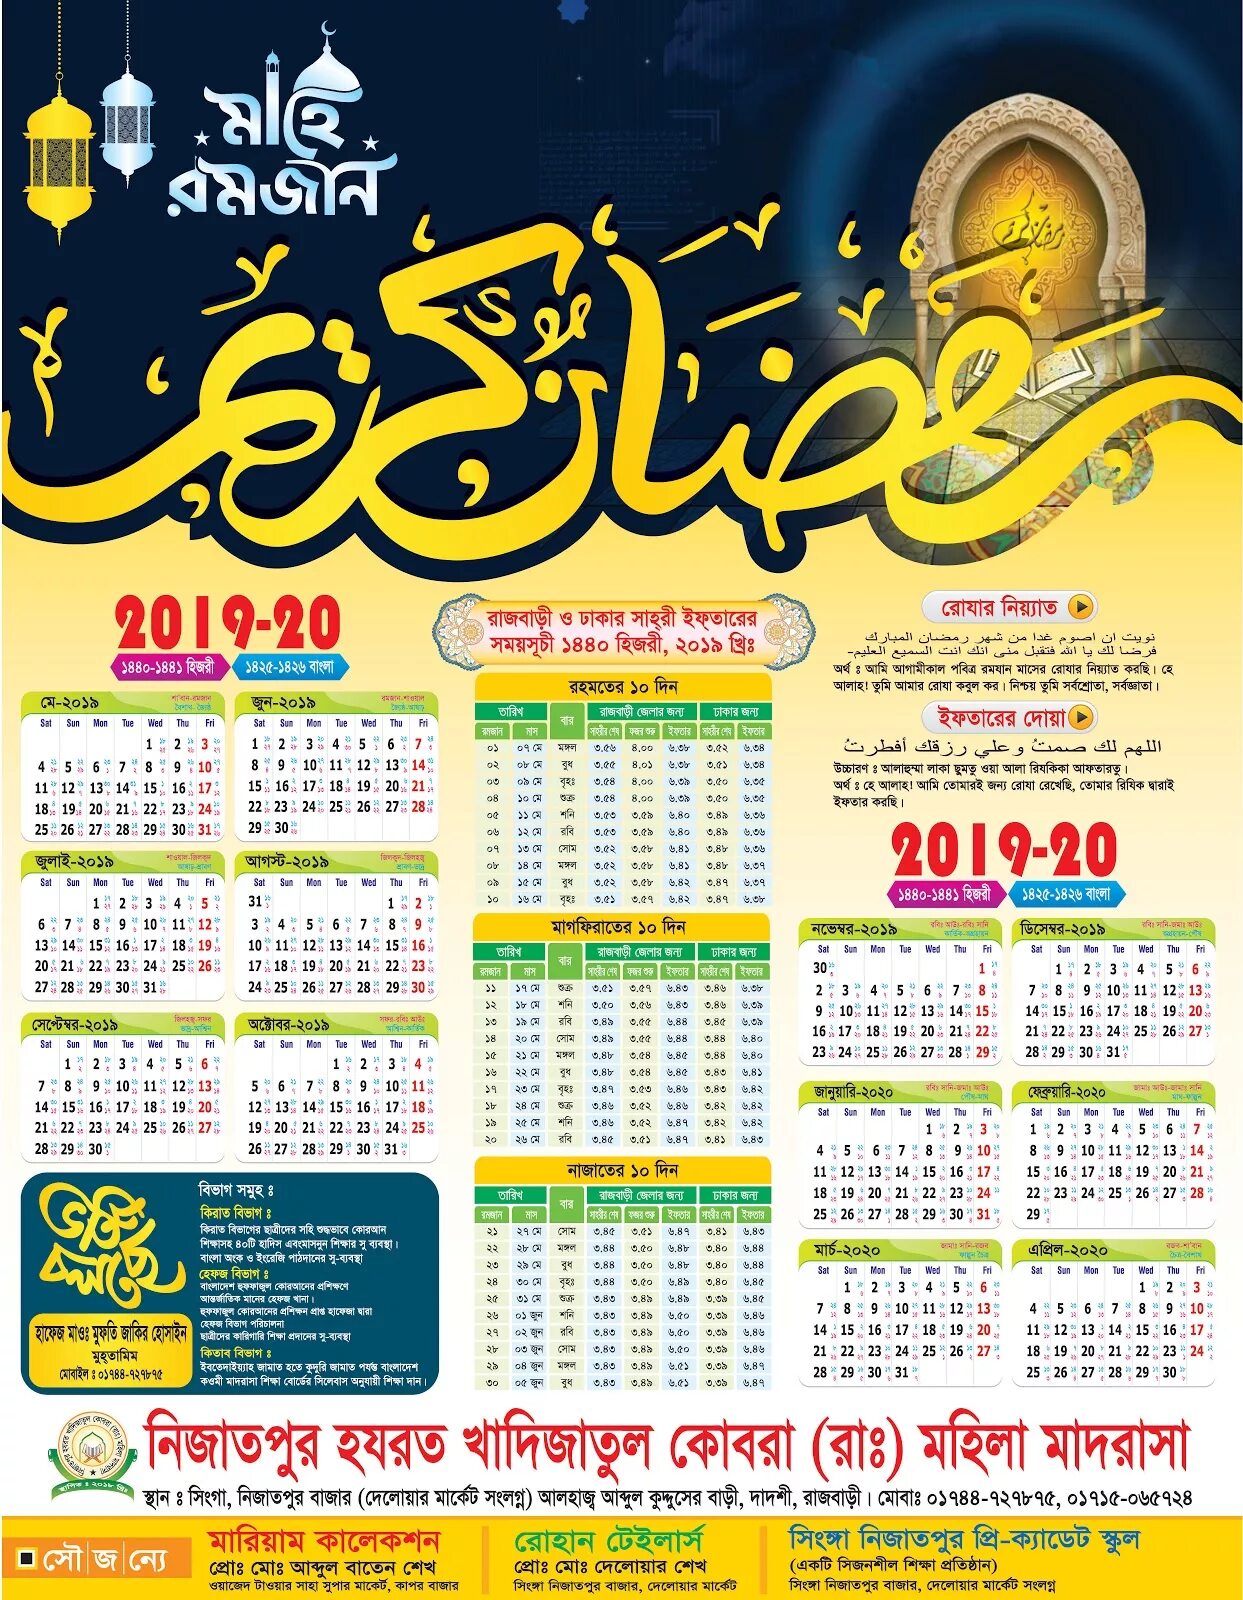 Календарь Рамадан. Рамазан календарь дизайн. Исламский календарь. Мусульманский календарь 2019.